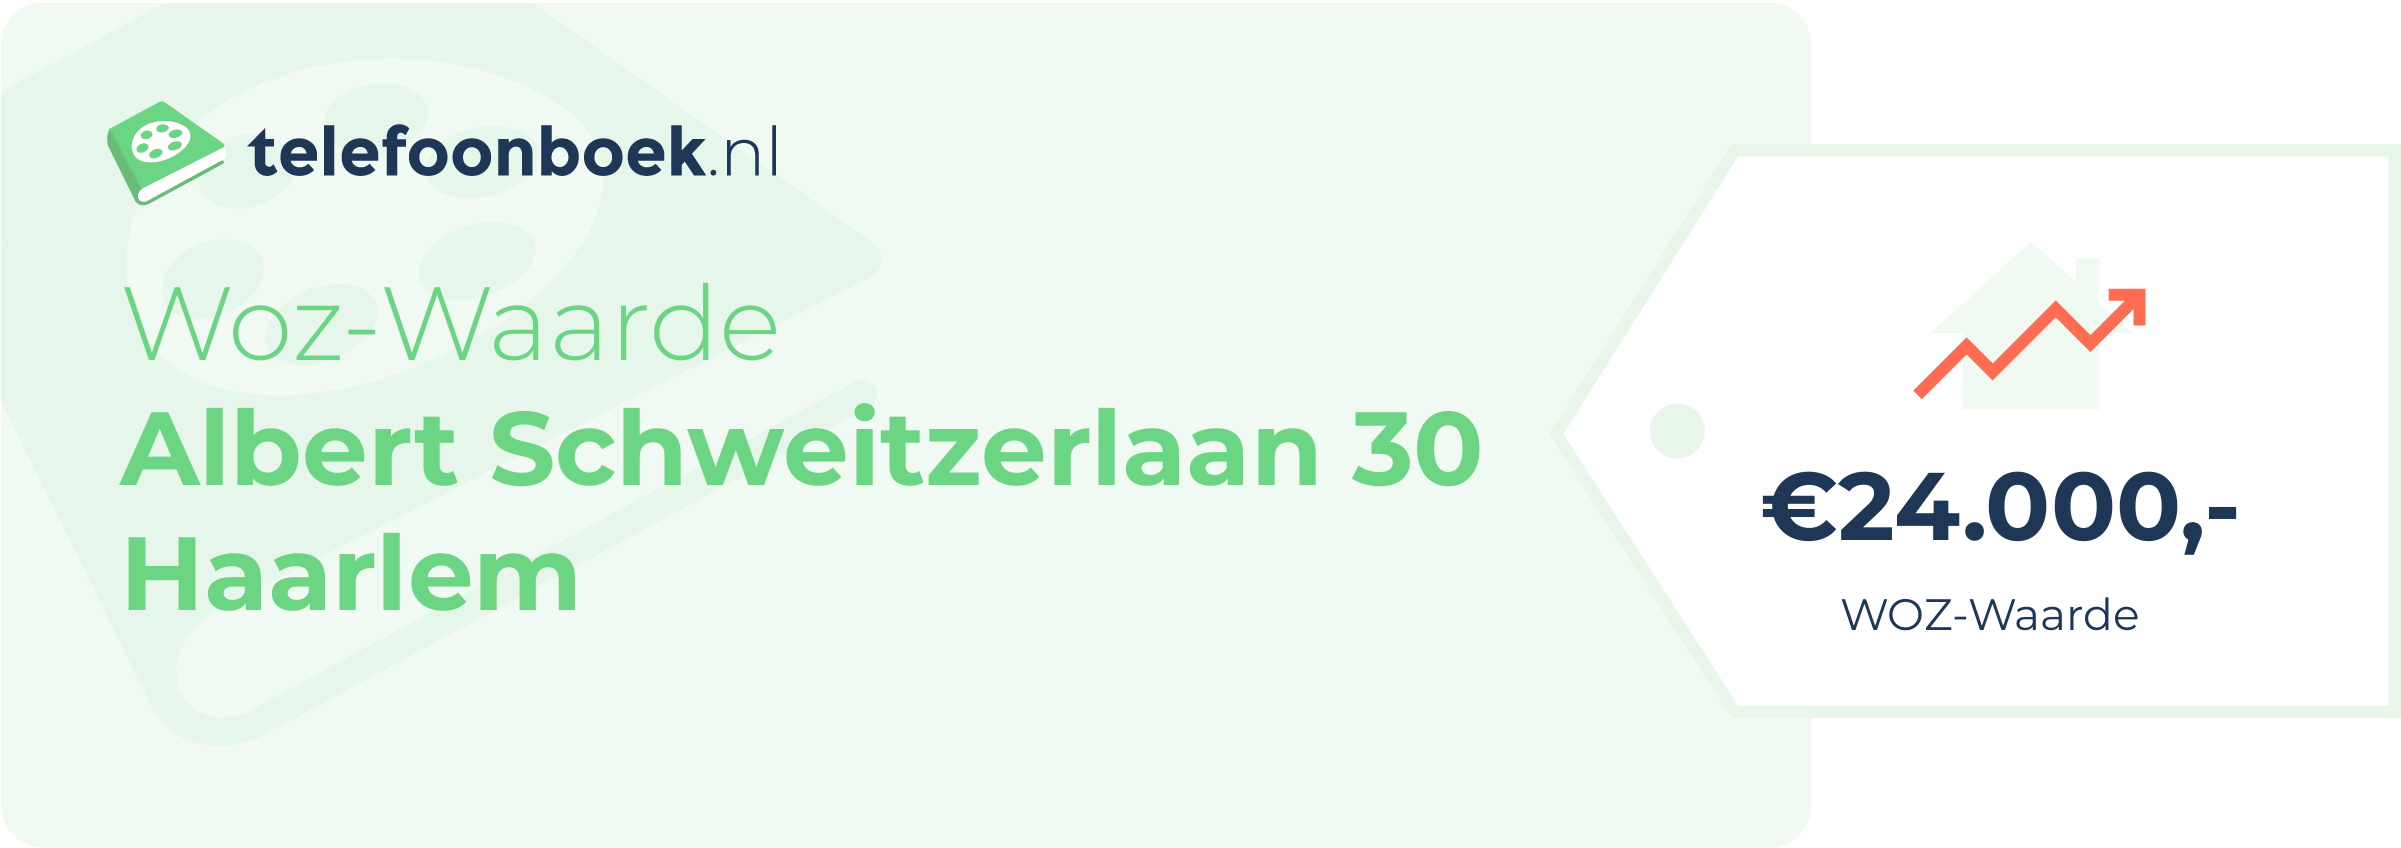 WOZ-waarde Albert Schweitzerlaan 30 Haarlem